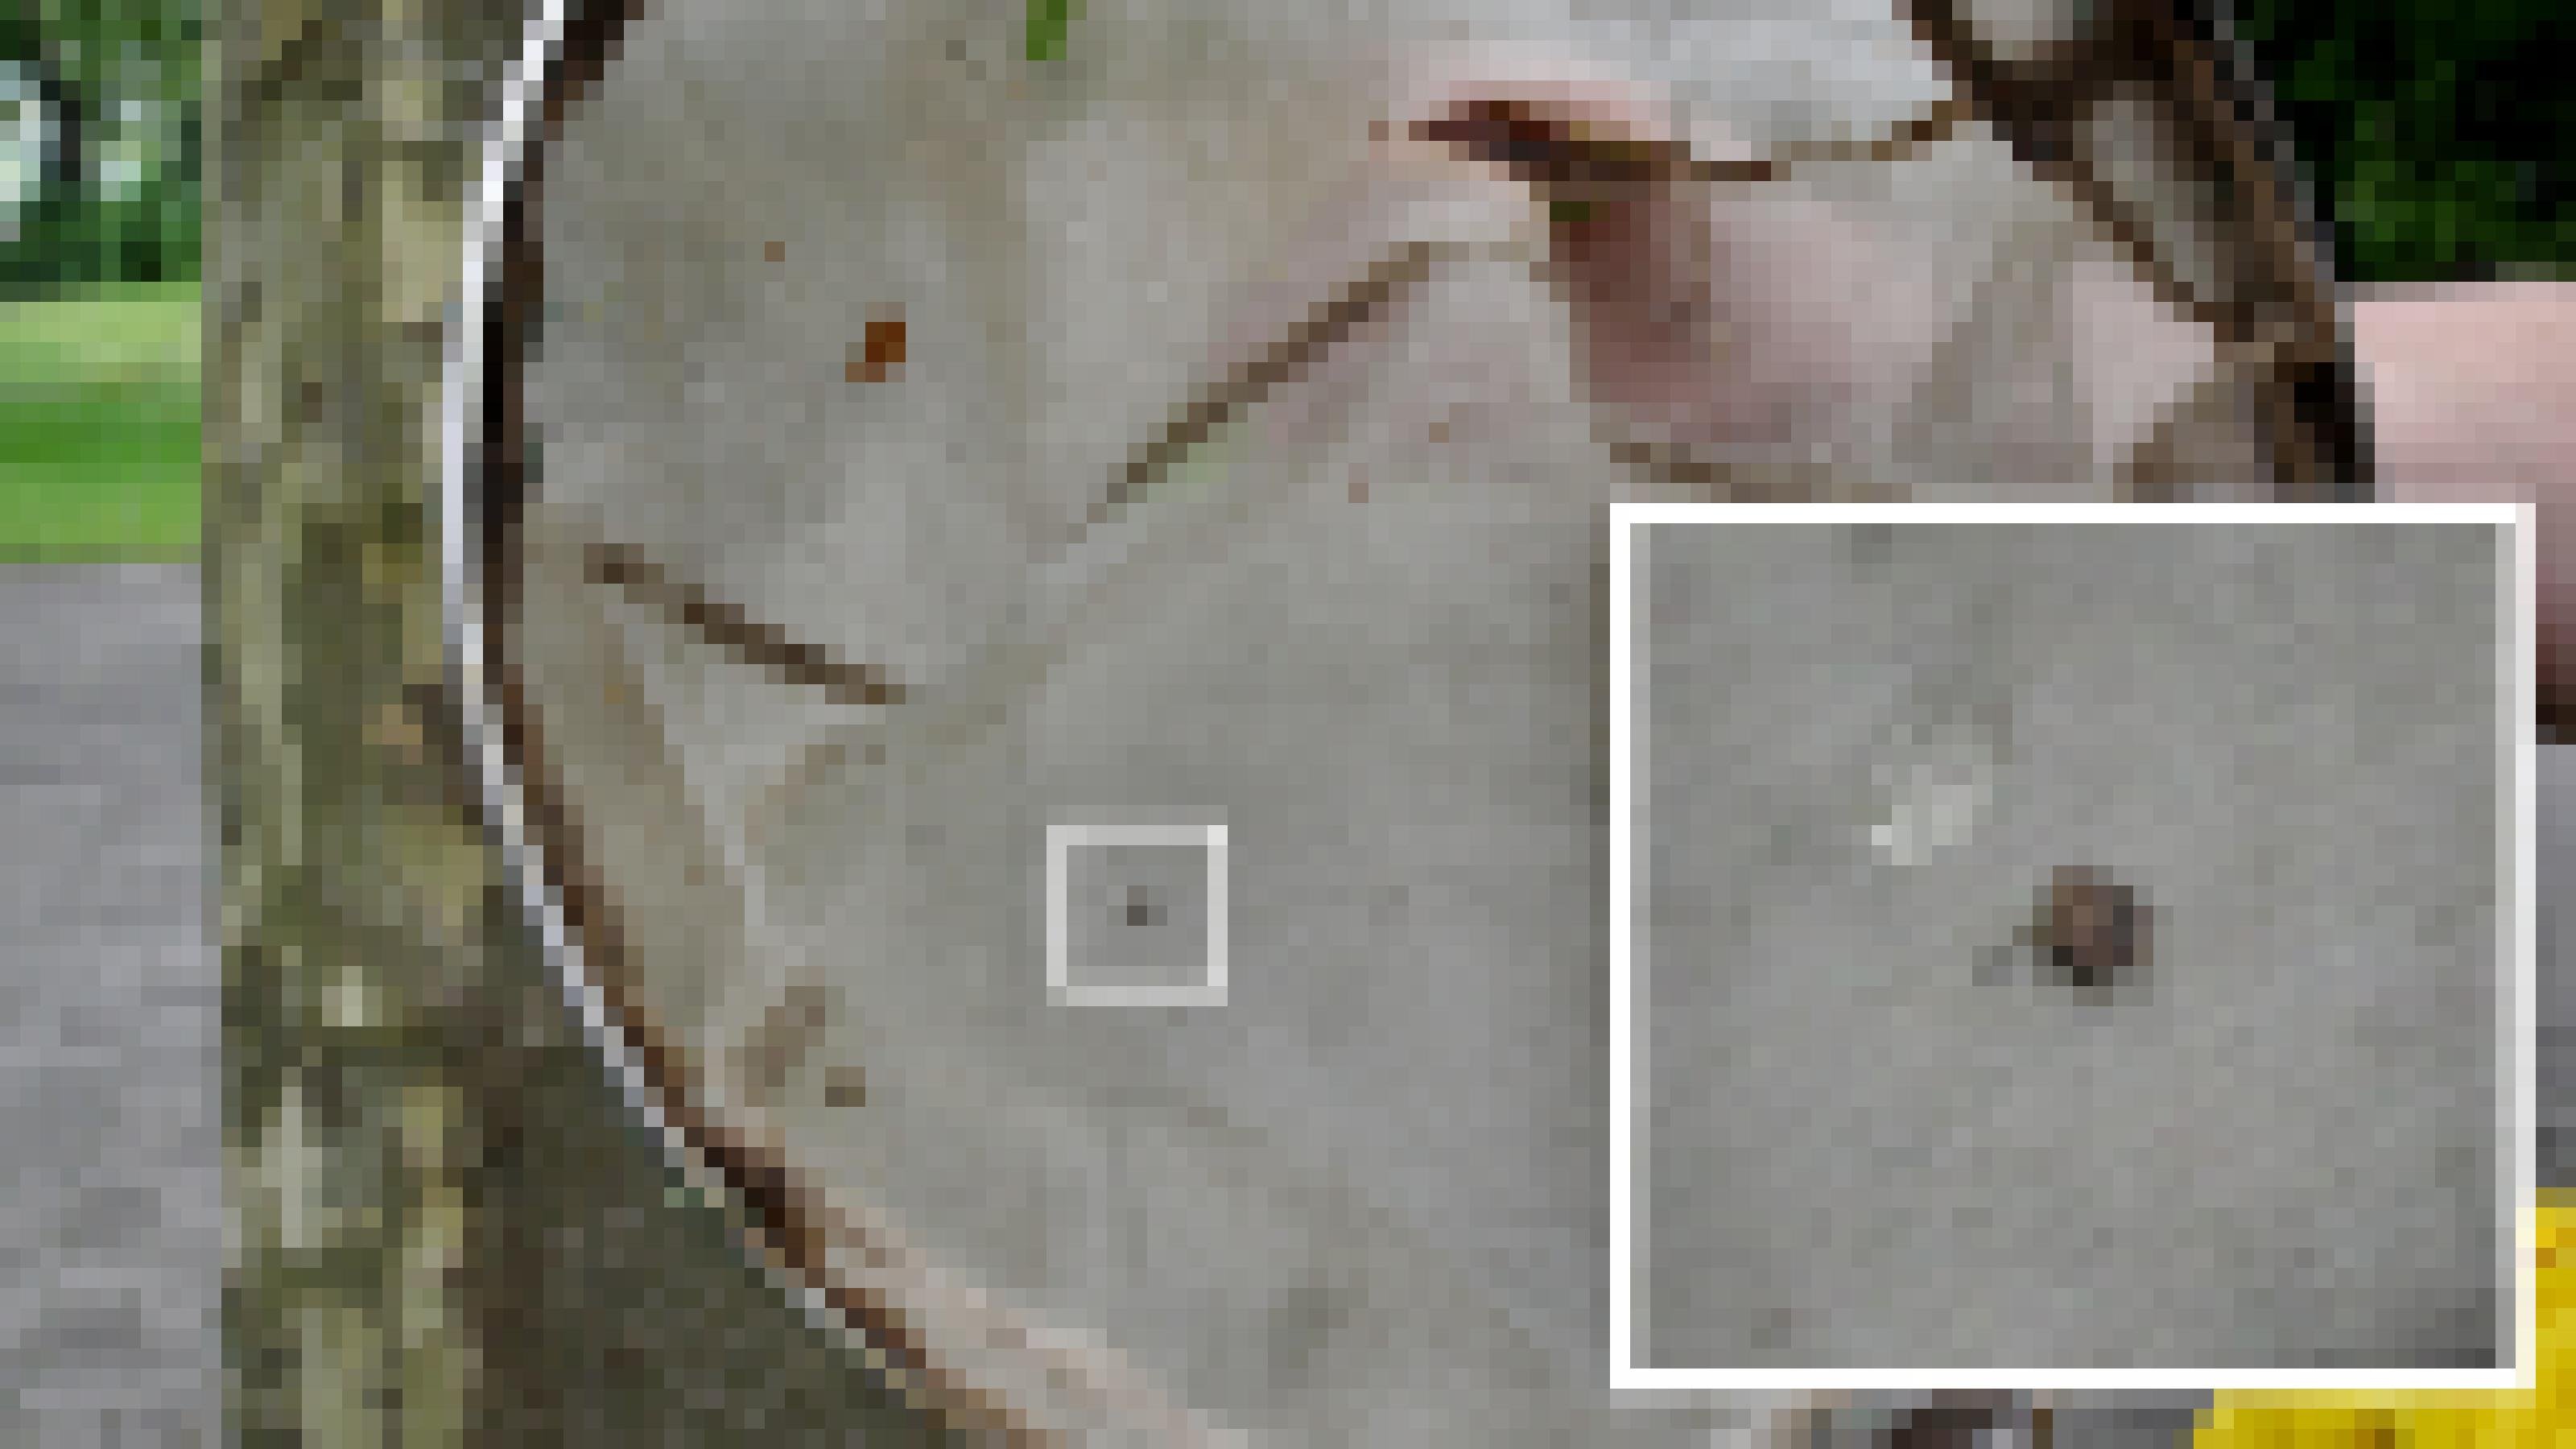 Auf weiß-grauer Gaze eines Keschers ist als kleiner dunkler Punkt eine Zikade zu sehen. Ein Bildausschnitt zeigt das Insekt vergrößert.